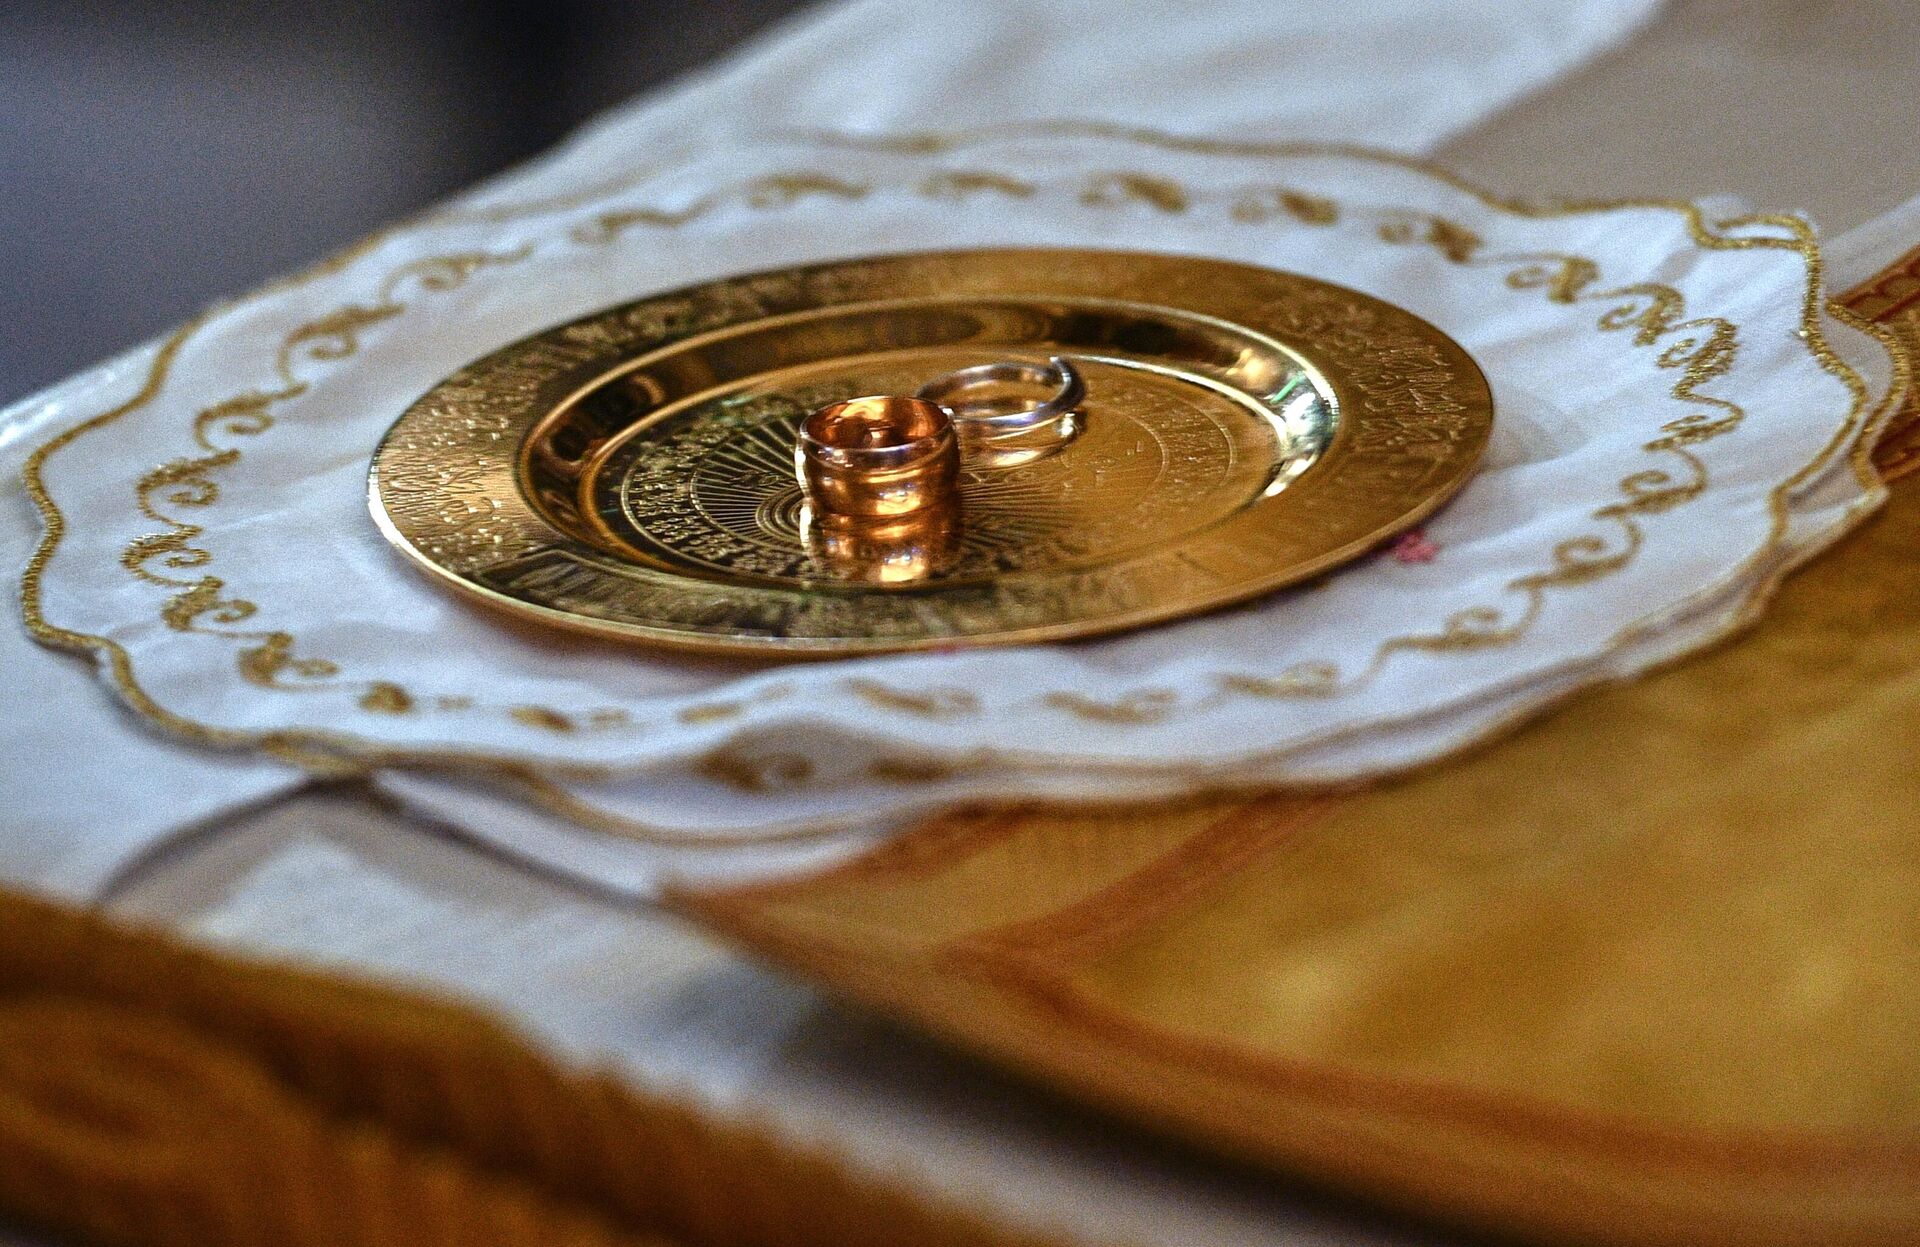 Христианское поведение в православной церкви: все, что нужно знать о таинстве венчания